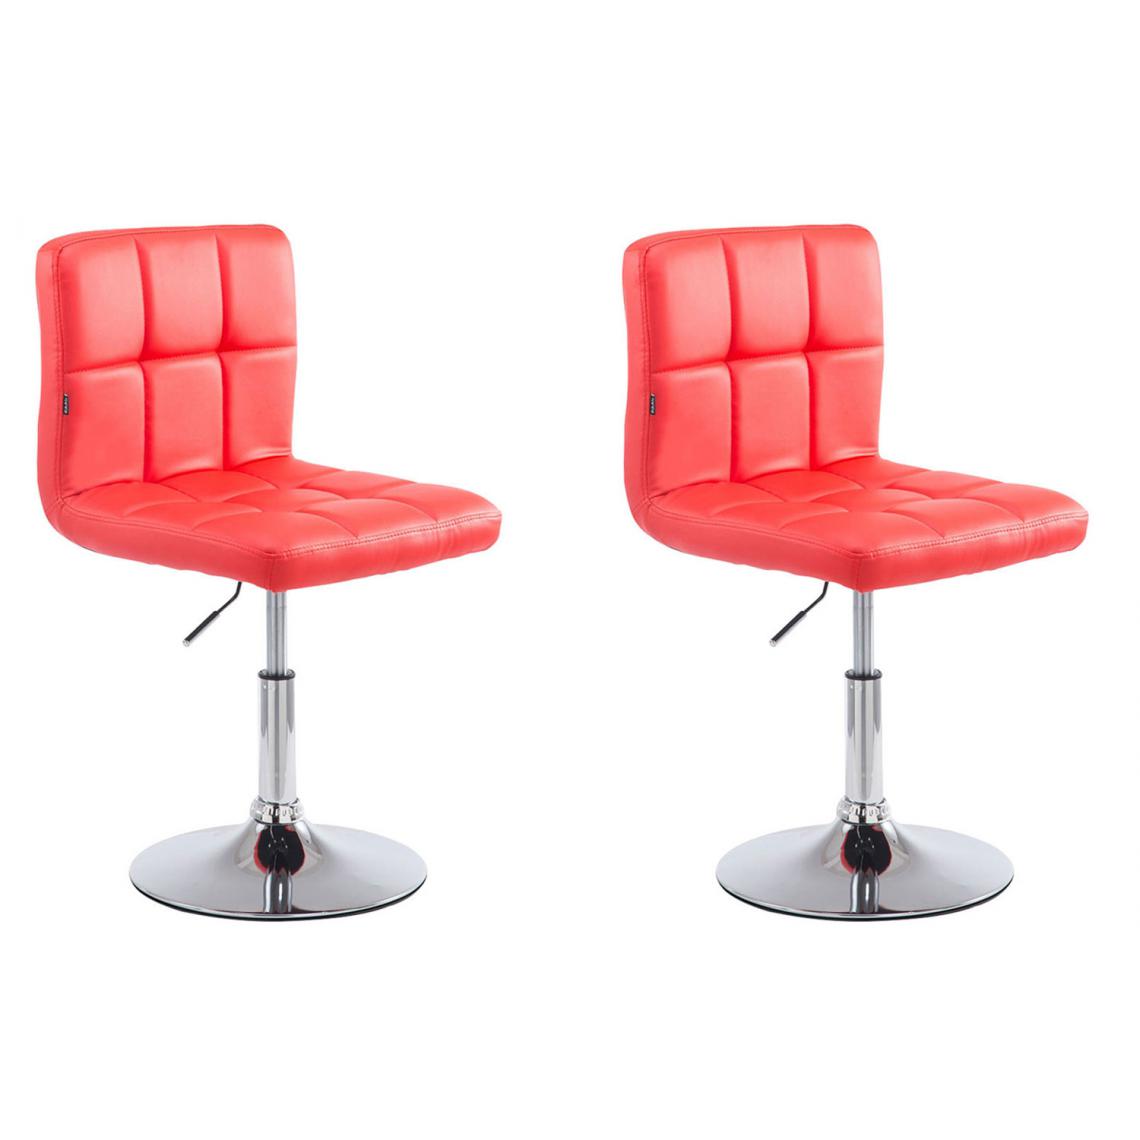 Icaverne - Moderne Lot de 2 chaises longues categorie Bamako V2 en cuir artificiel couleur rouge - Tabourets